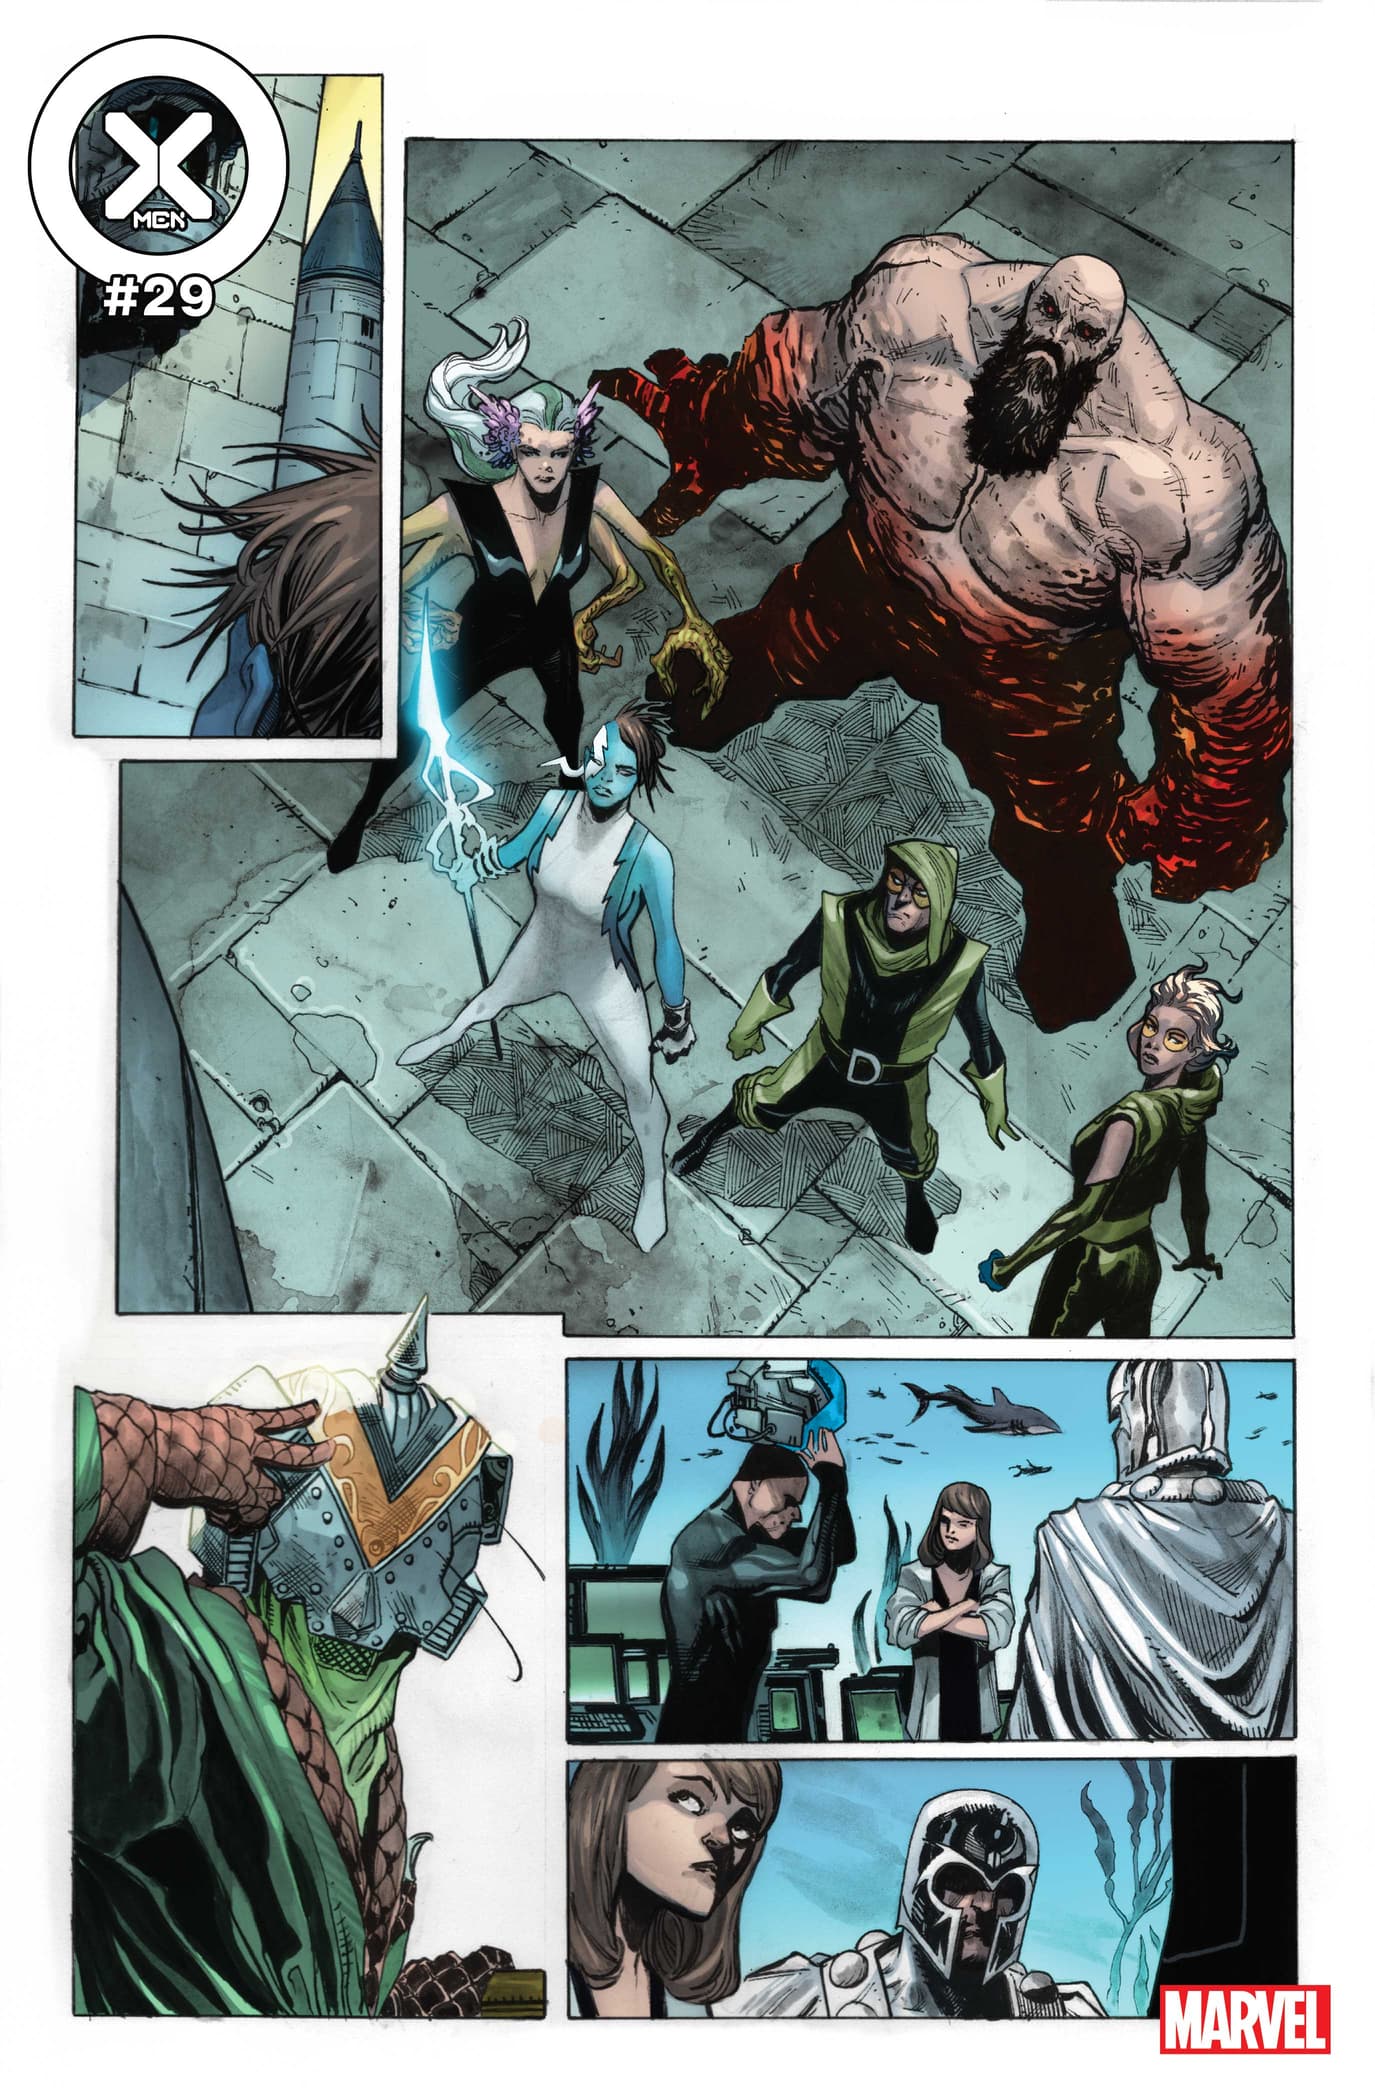 Doutor Destino reúne sua equipe de mutantes para defender a Latvéria.